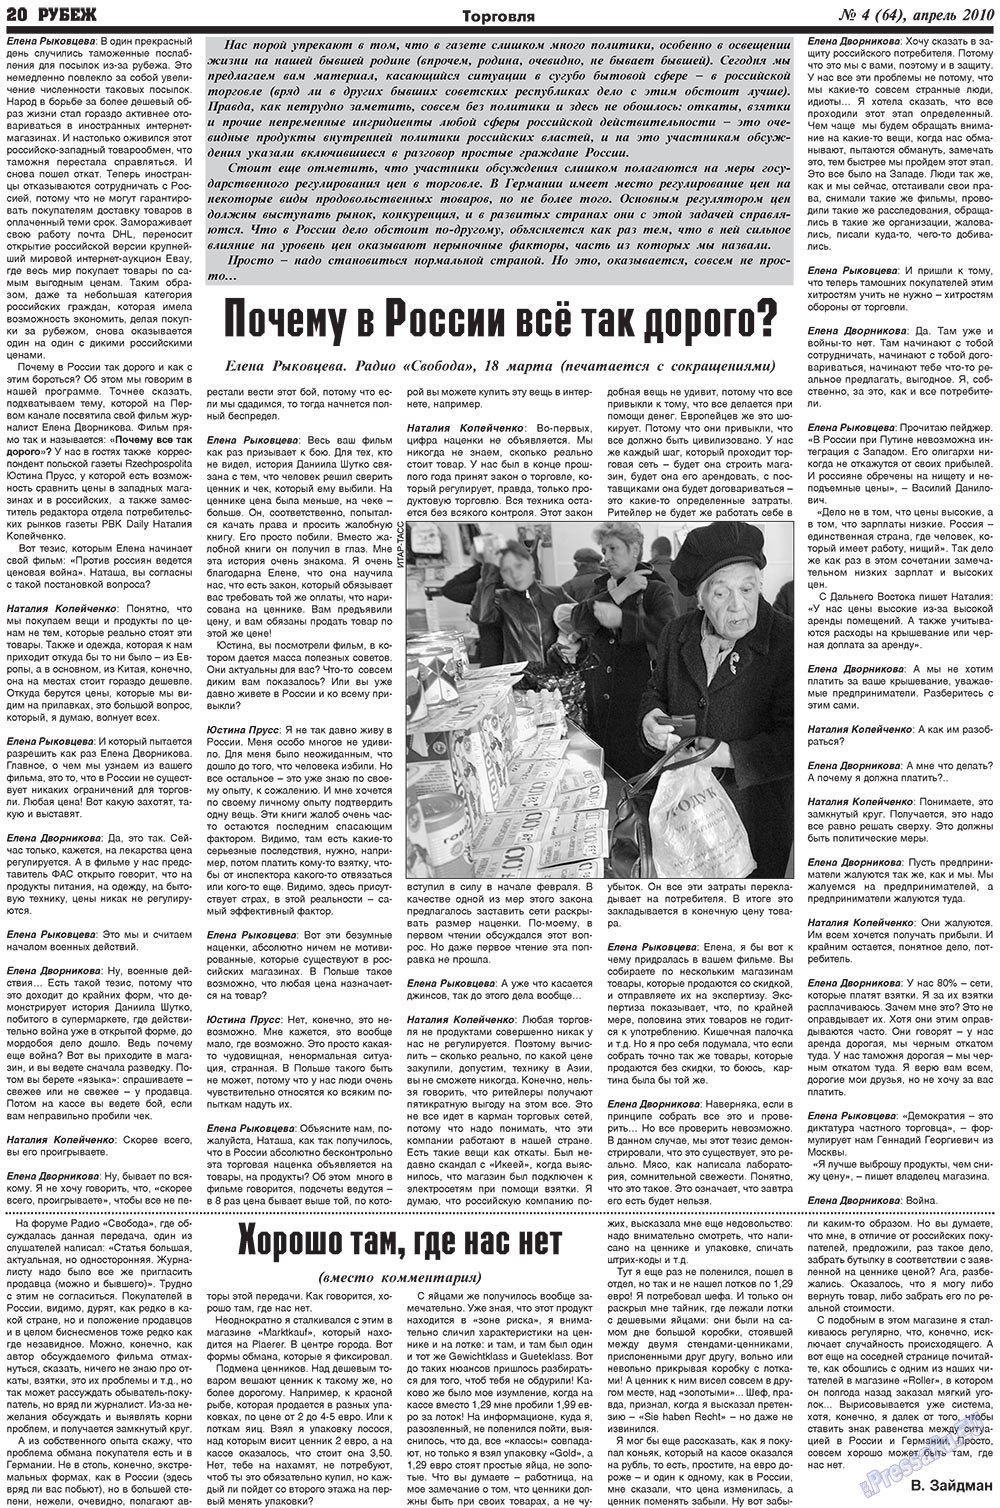 Рубеж (газета). 2010 год, номер 4, стр. 20